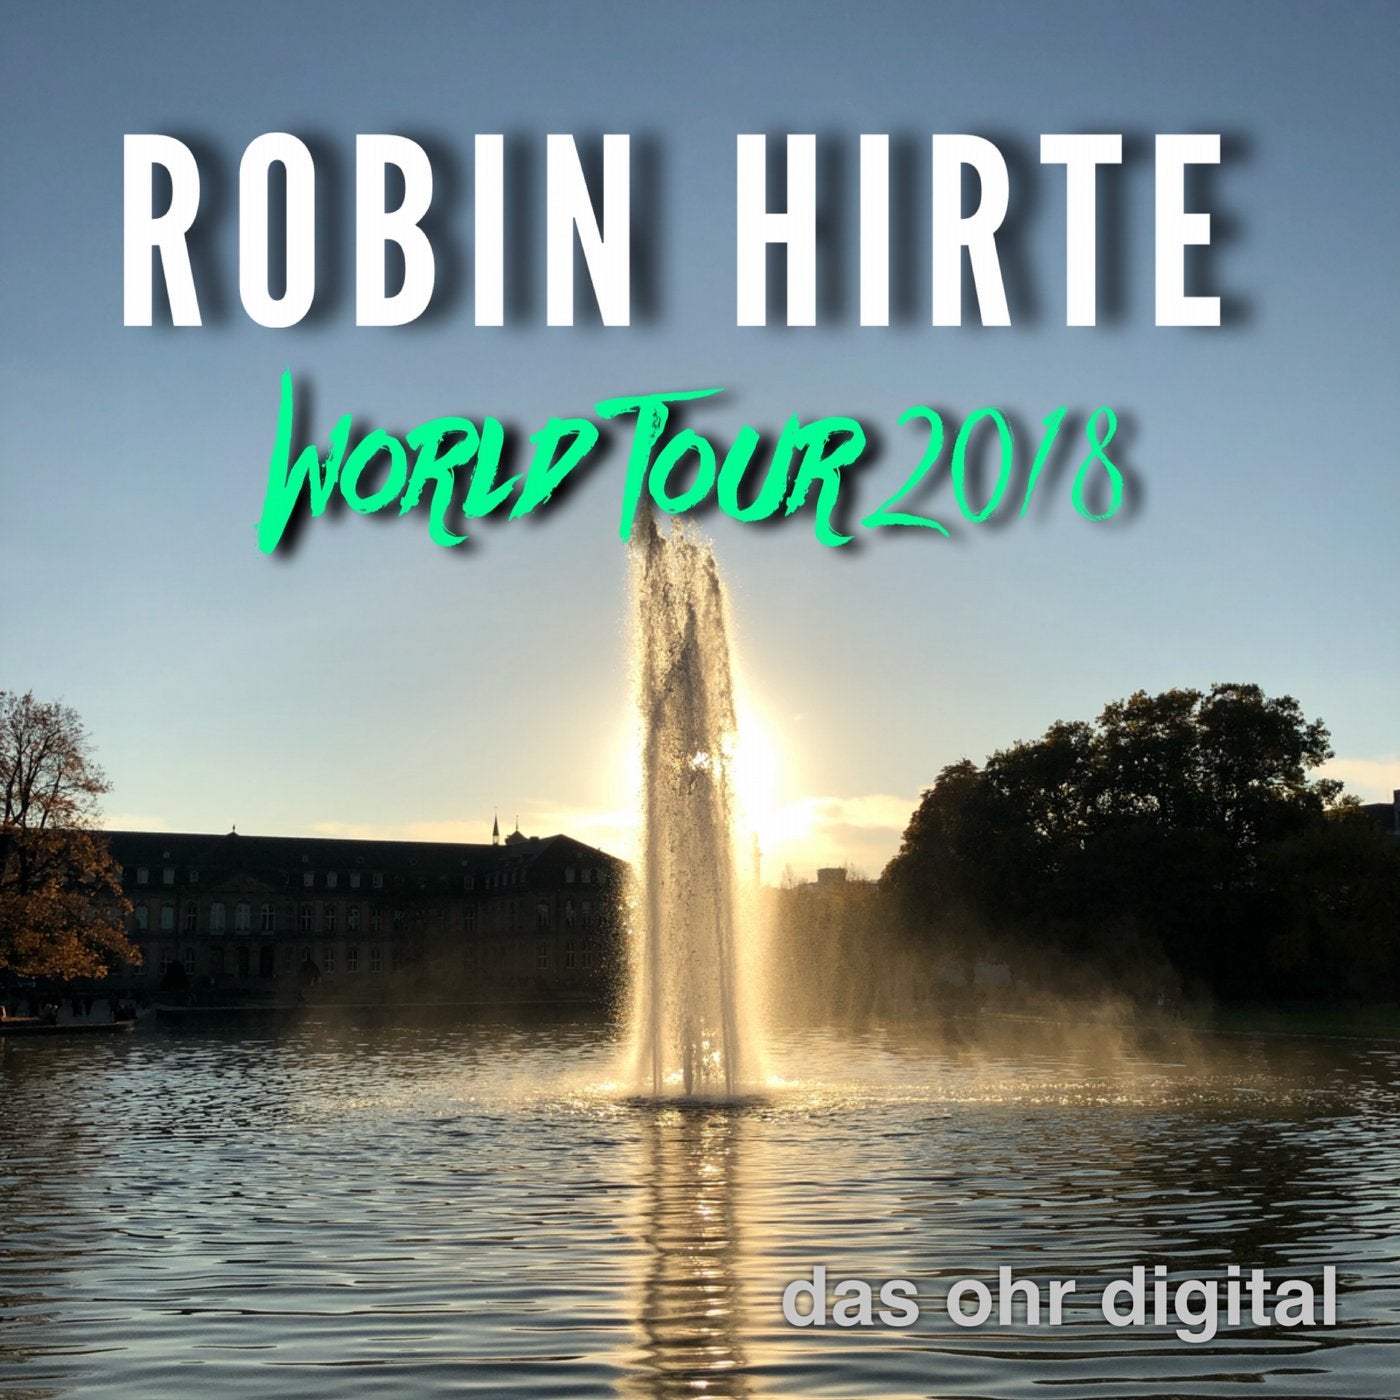 World Tour 2018